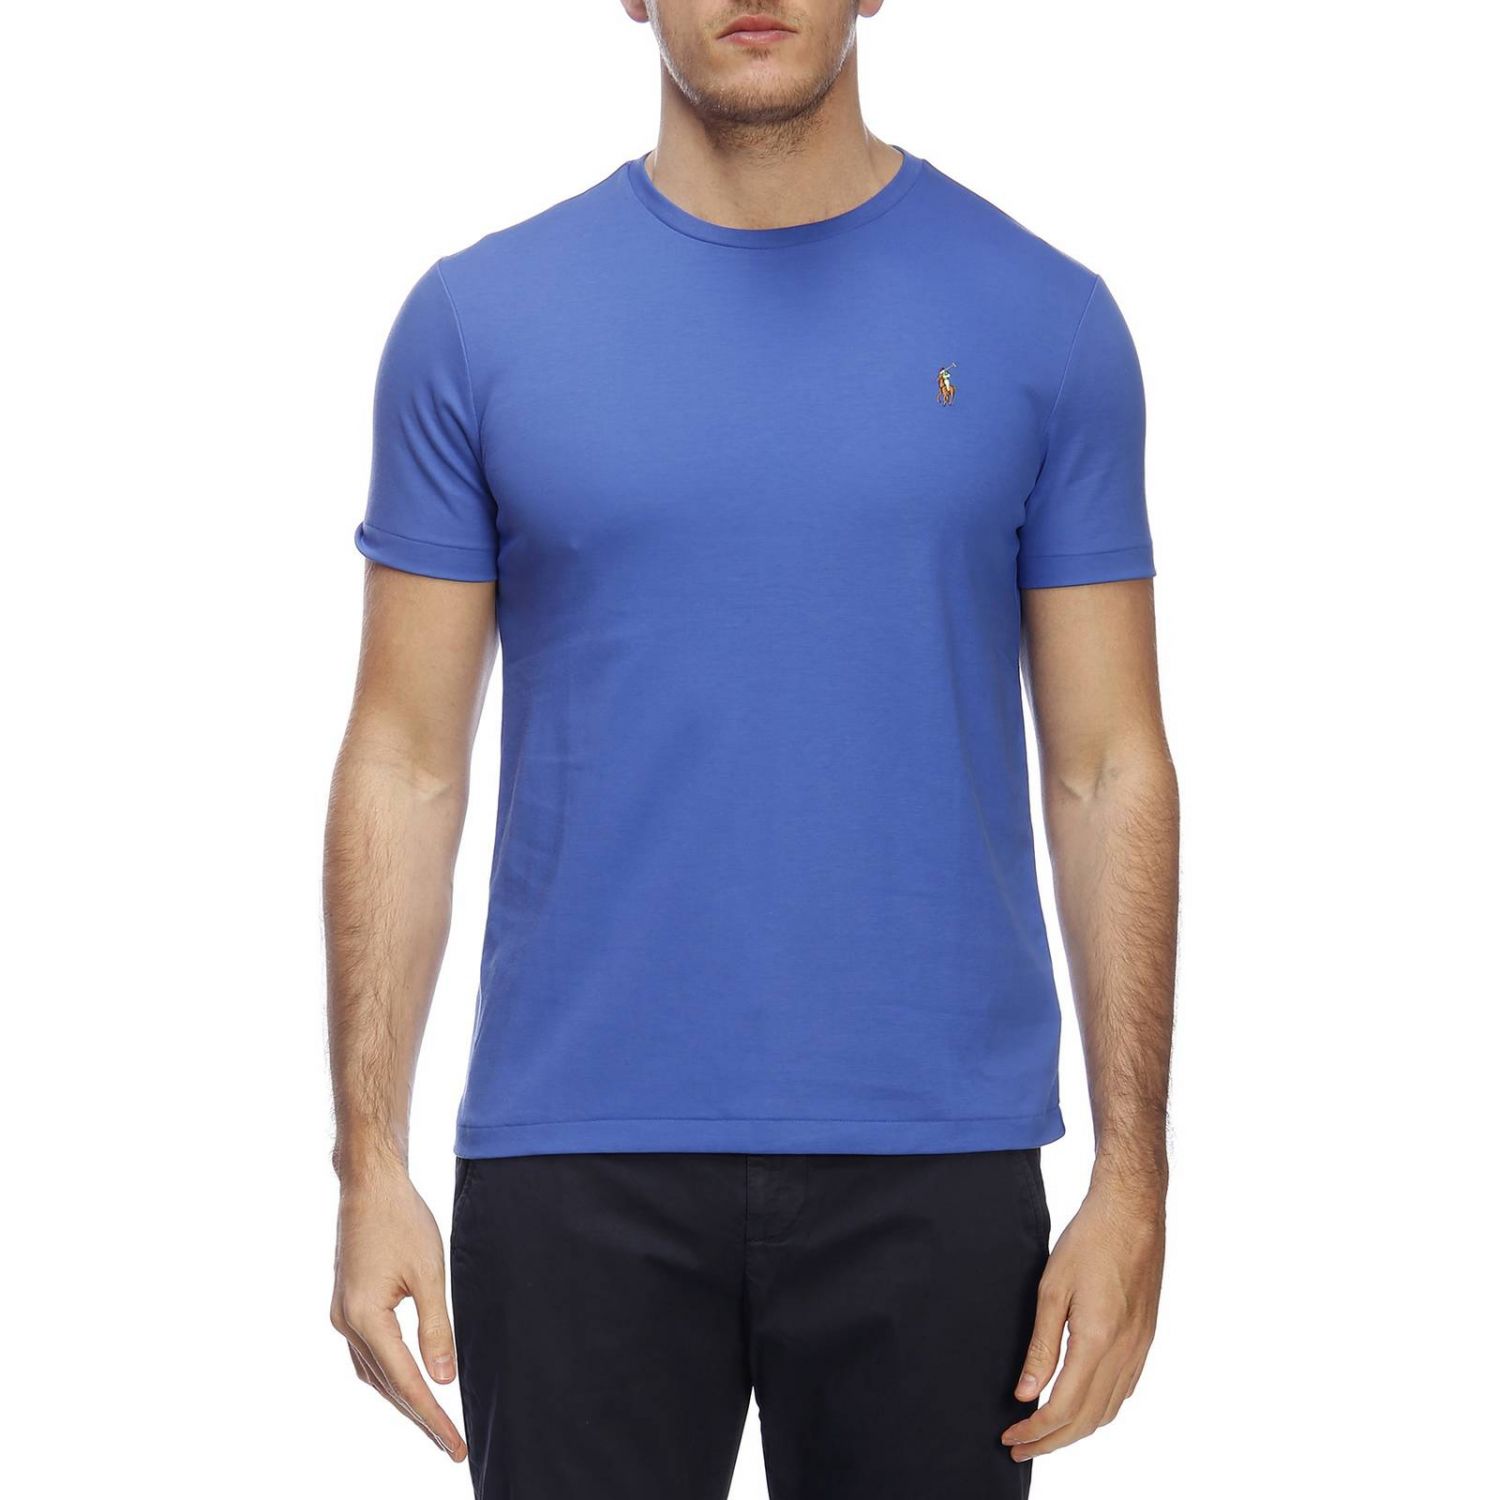 Polo Ralph Lauren Outlet: T-shirt men | T-Shirt Polo Ralph Lauren Men ...